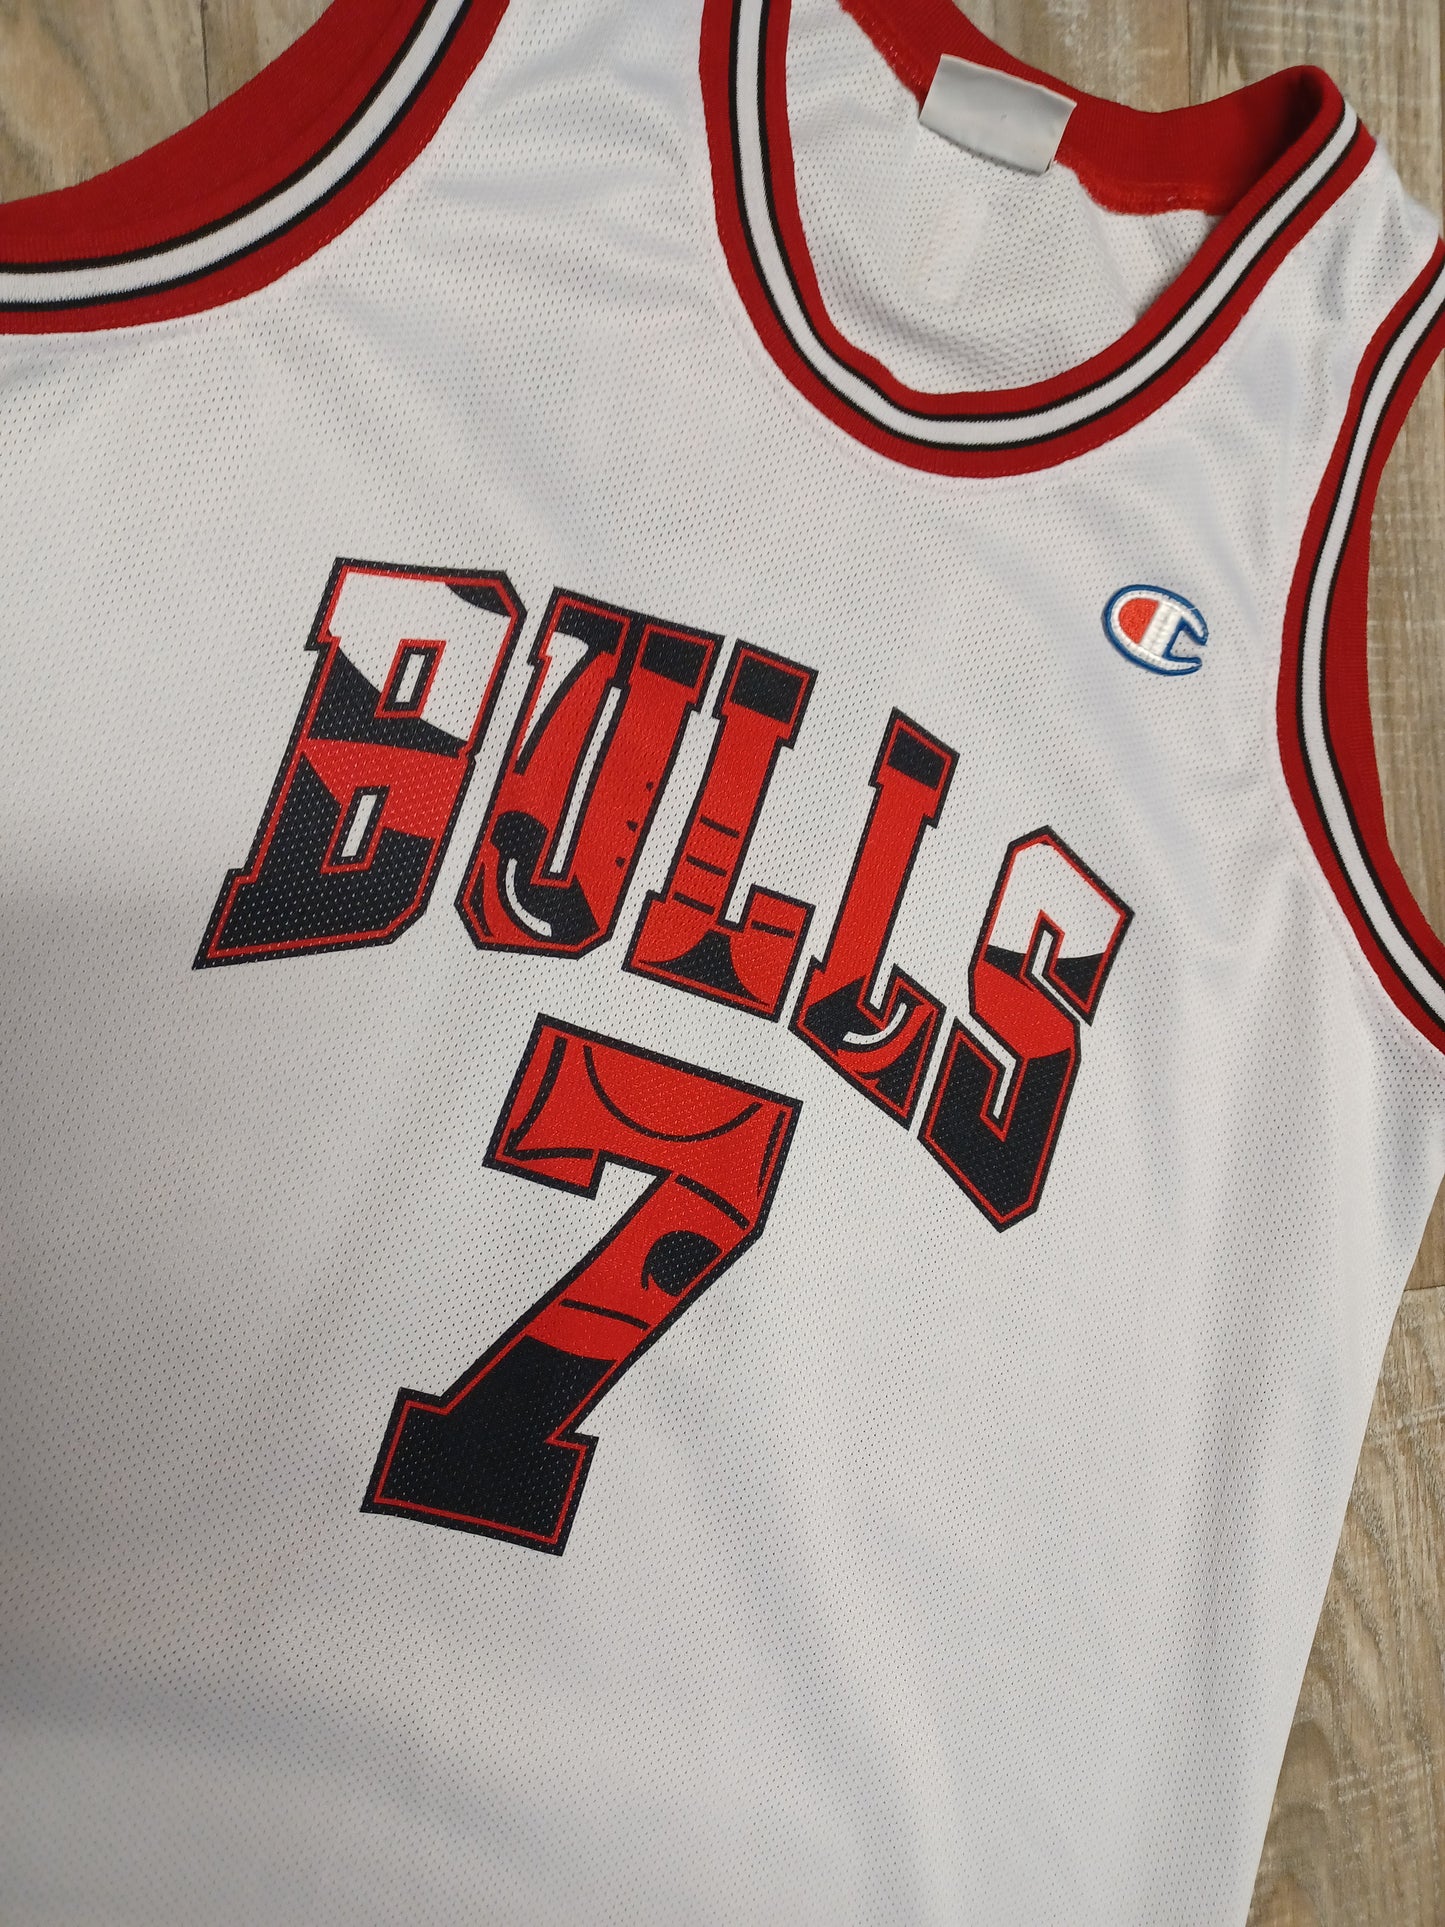 Ben Gordon Chicago Bulls Jersey Size Large